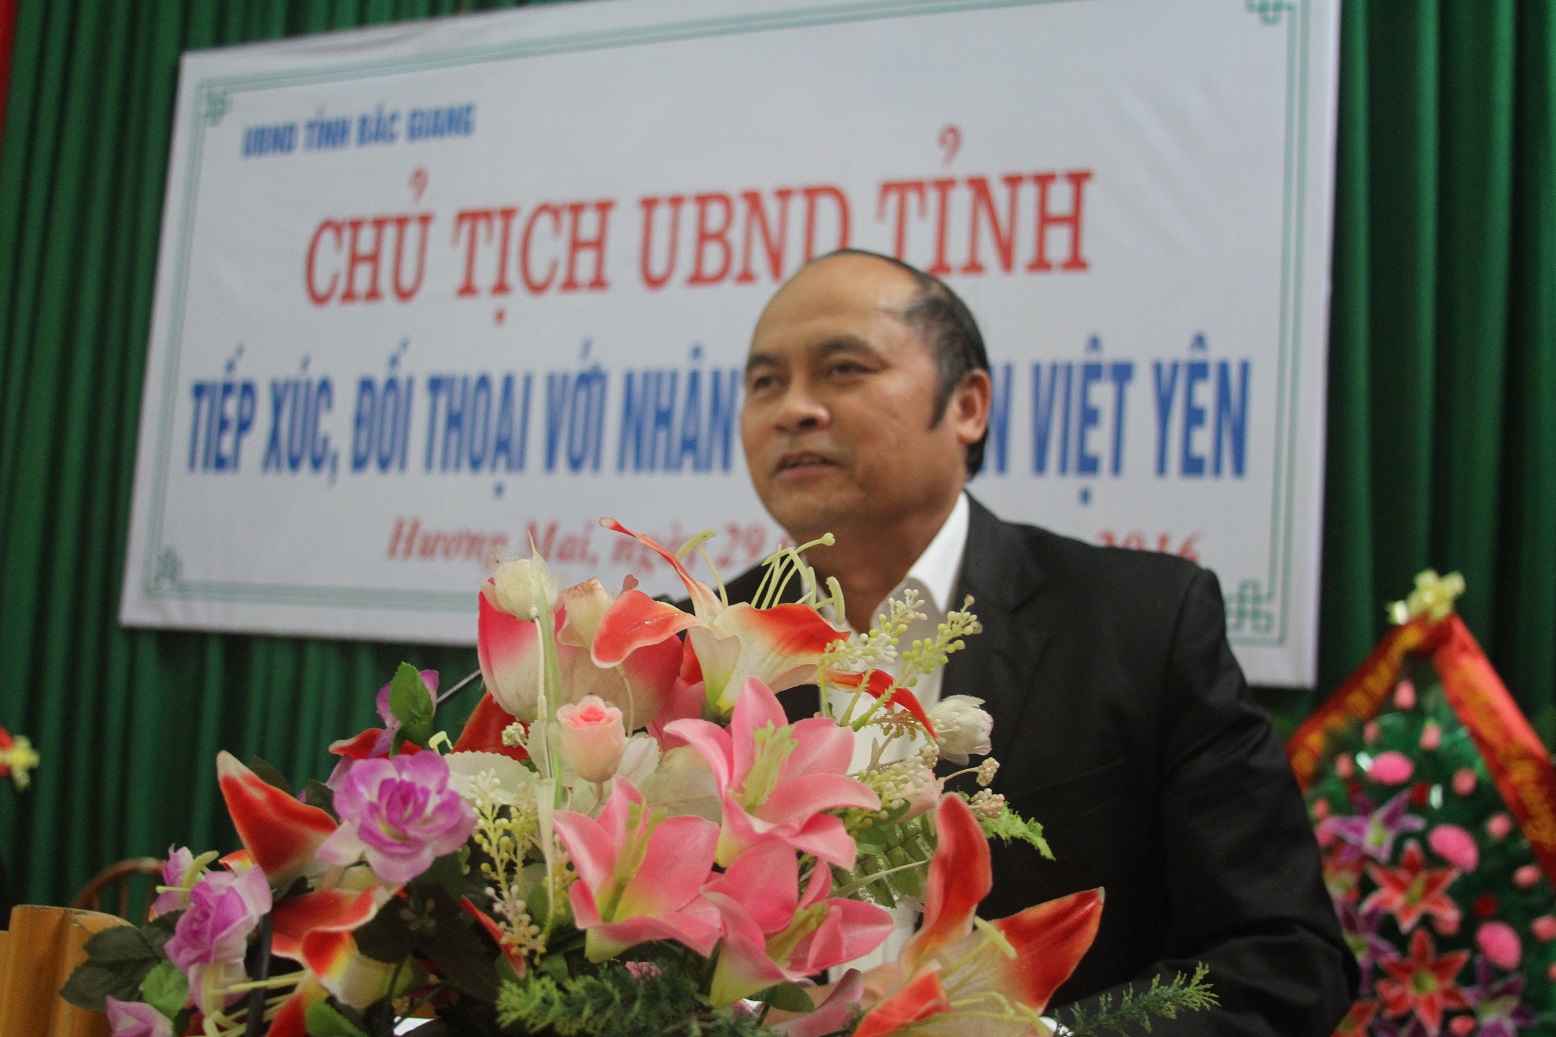 Chủ tịch UBND tỉnh Nguyễn Văn Linh tiếp xúc, đối thoại  với nhân dân